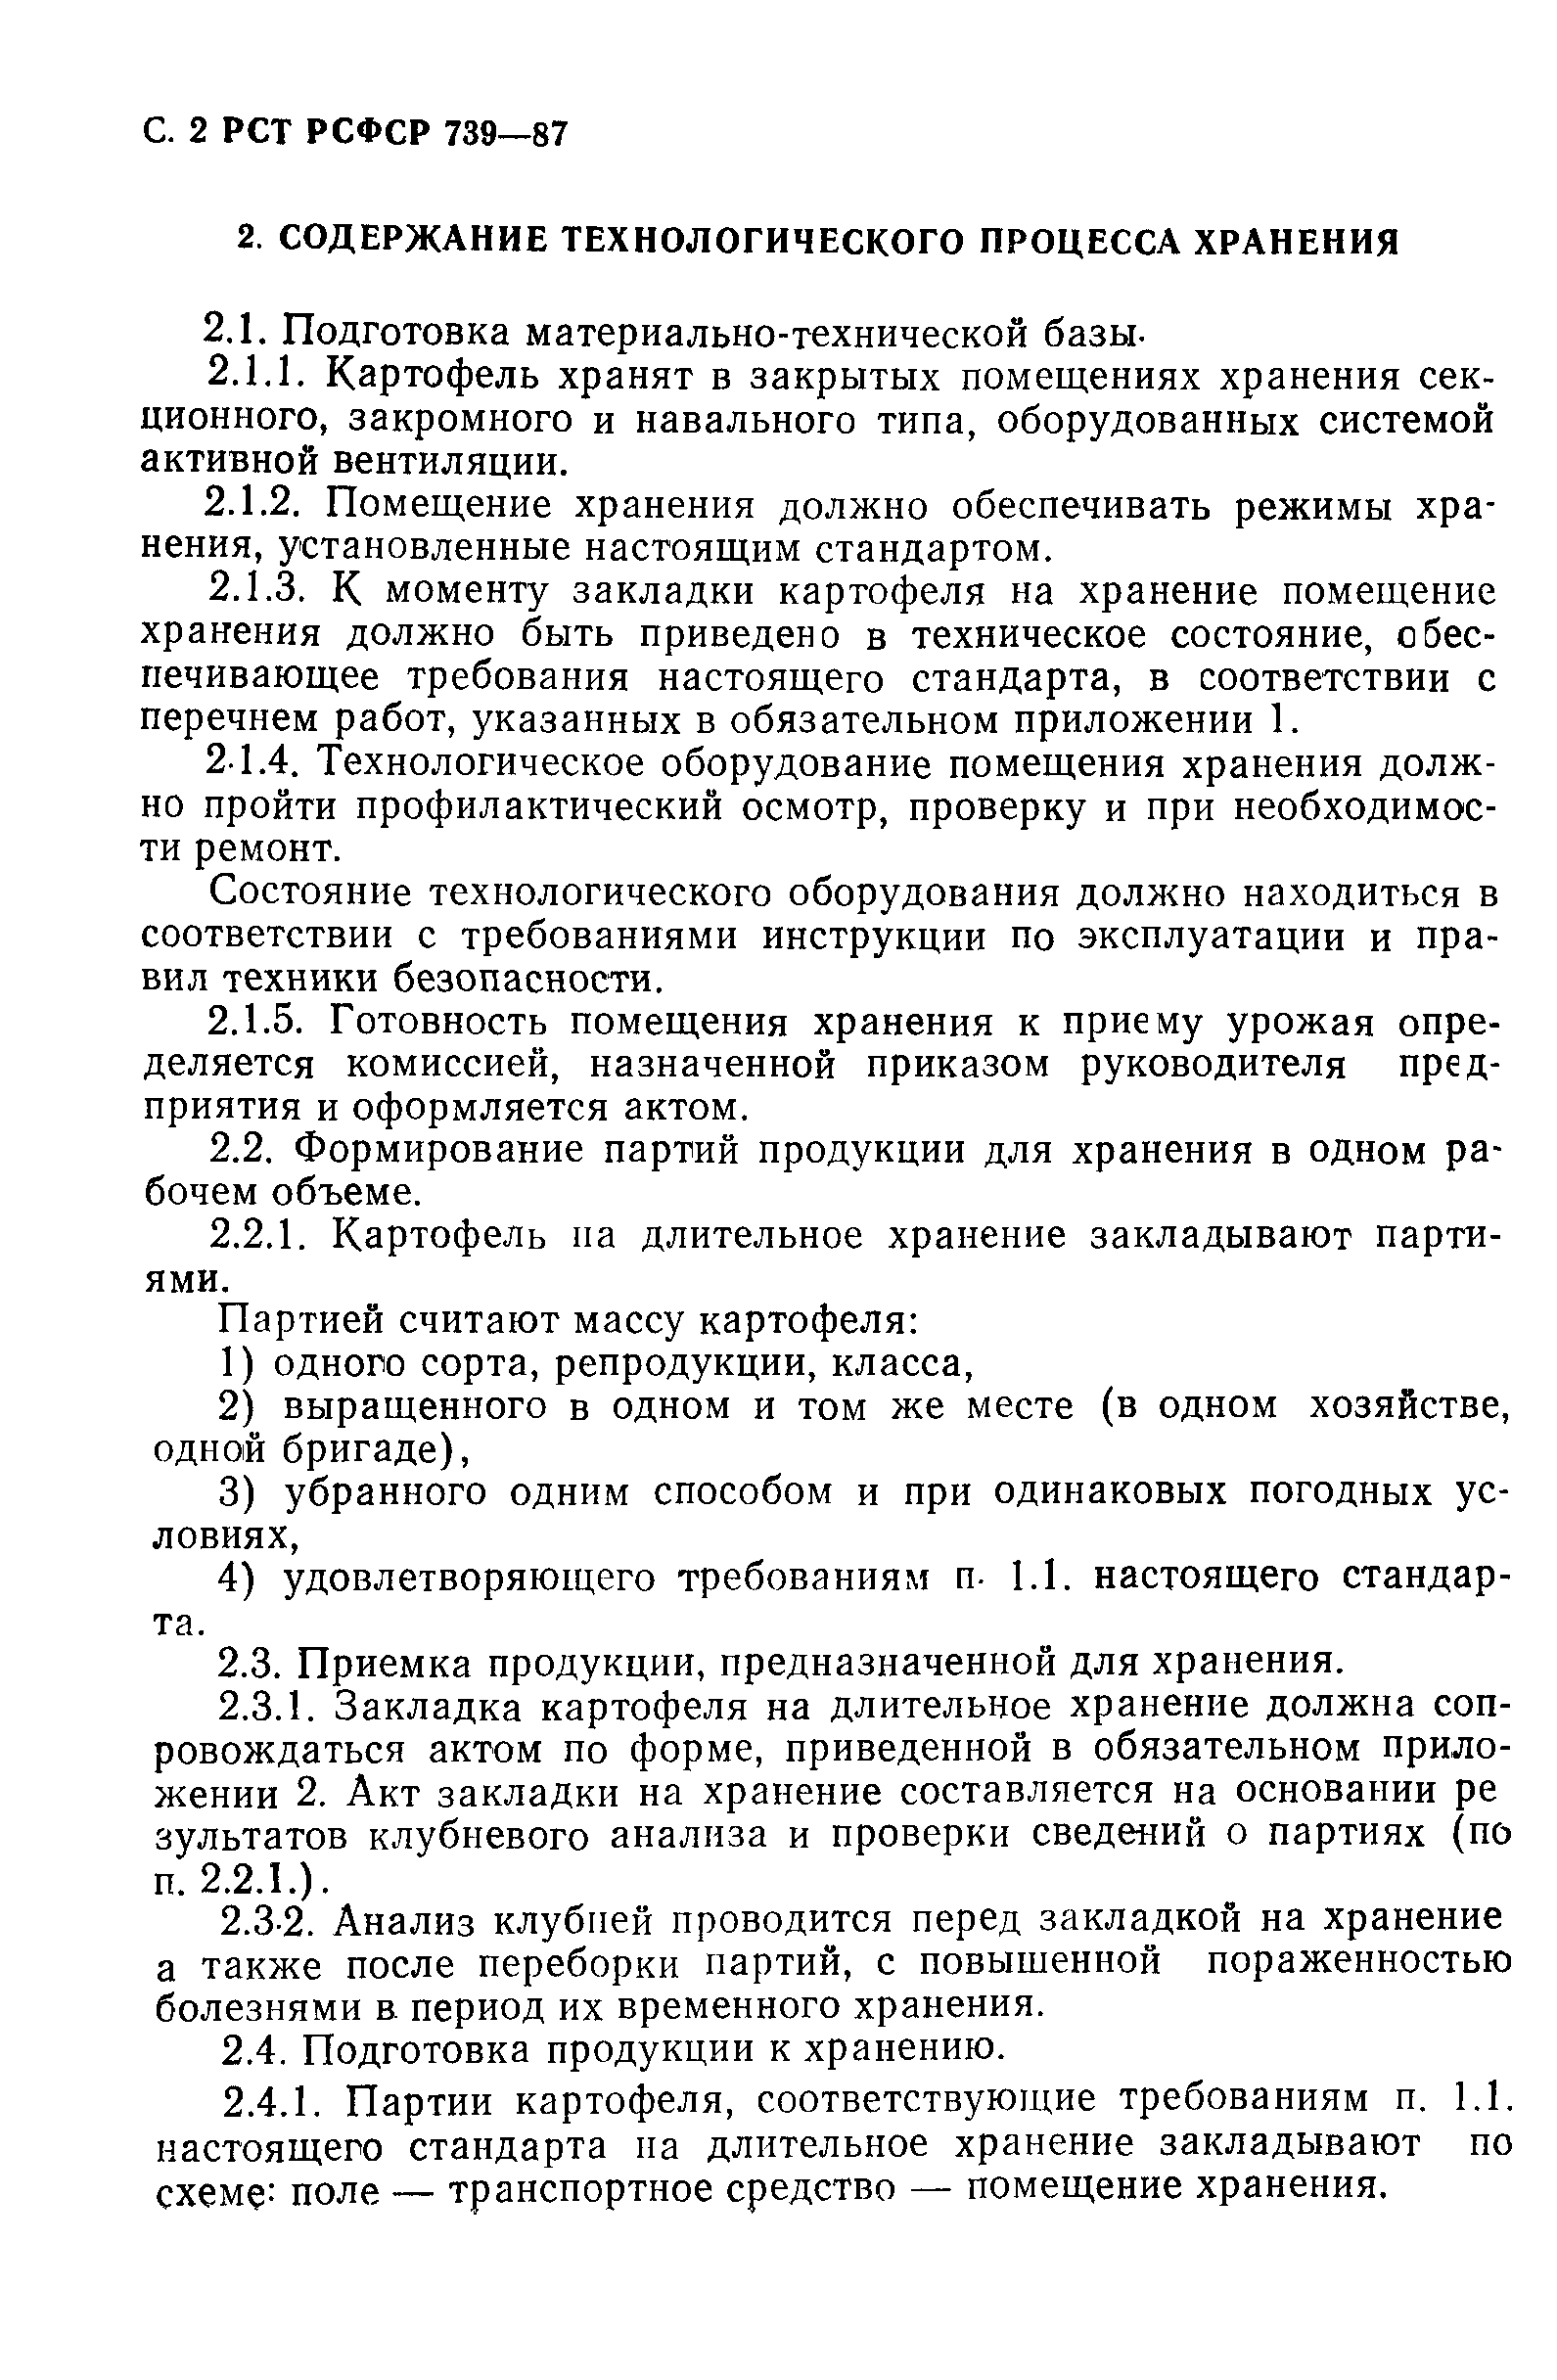 РСТ РСФСР 739-87